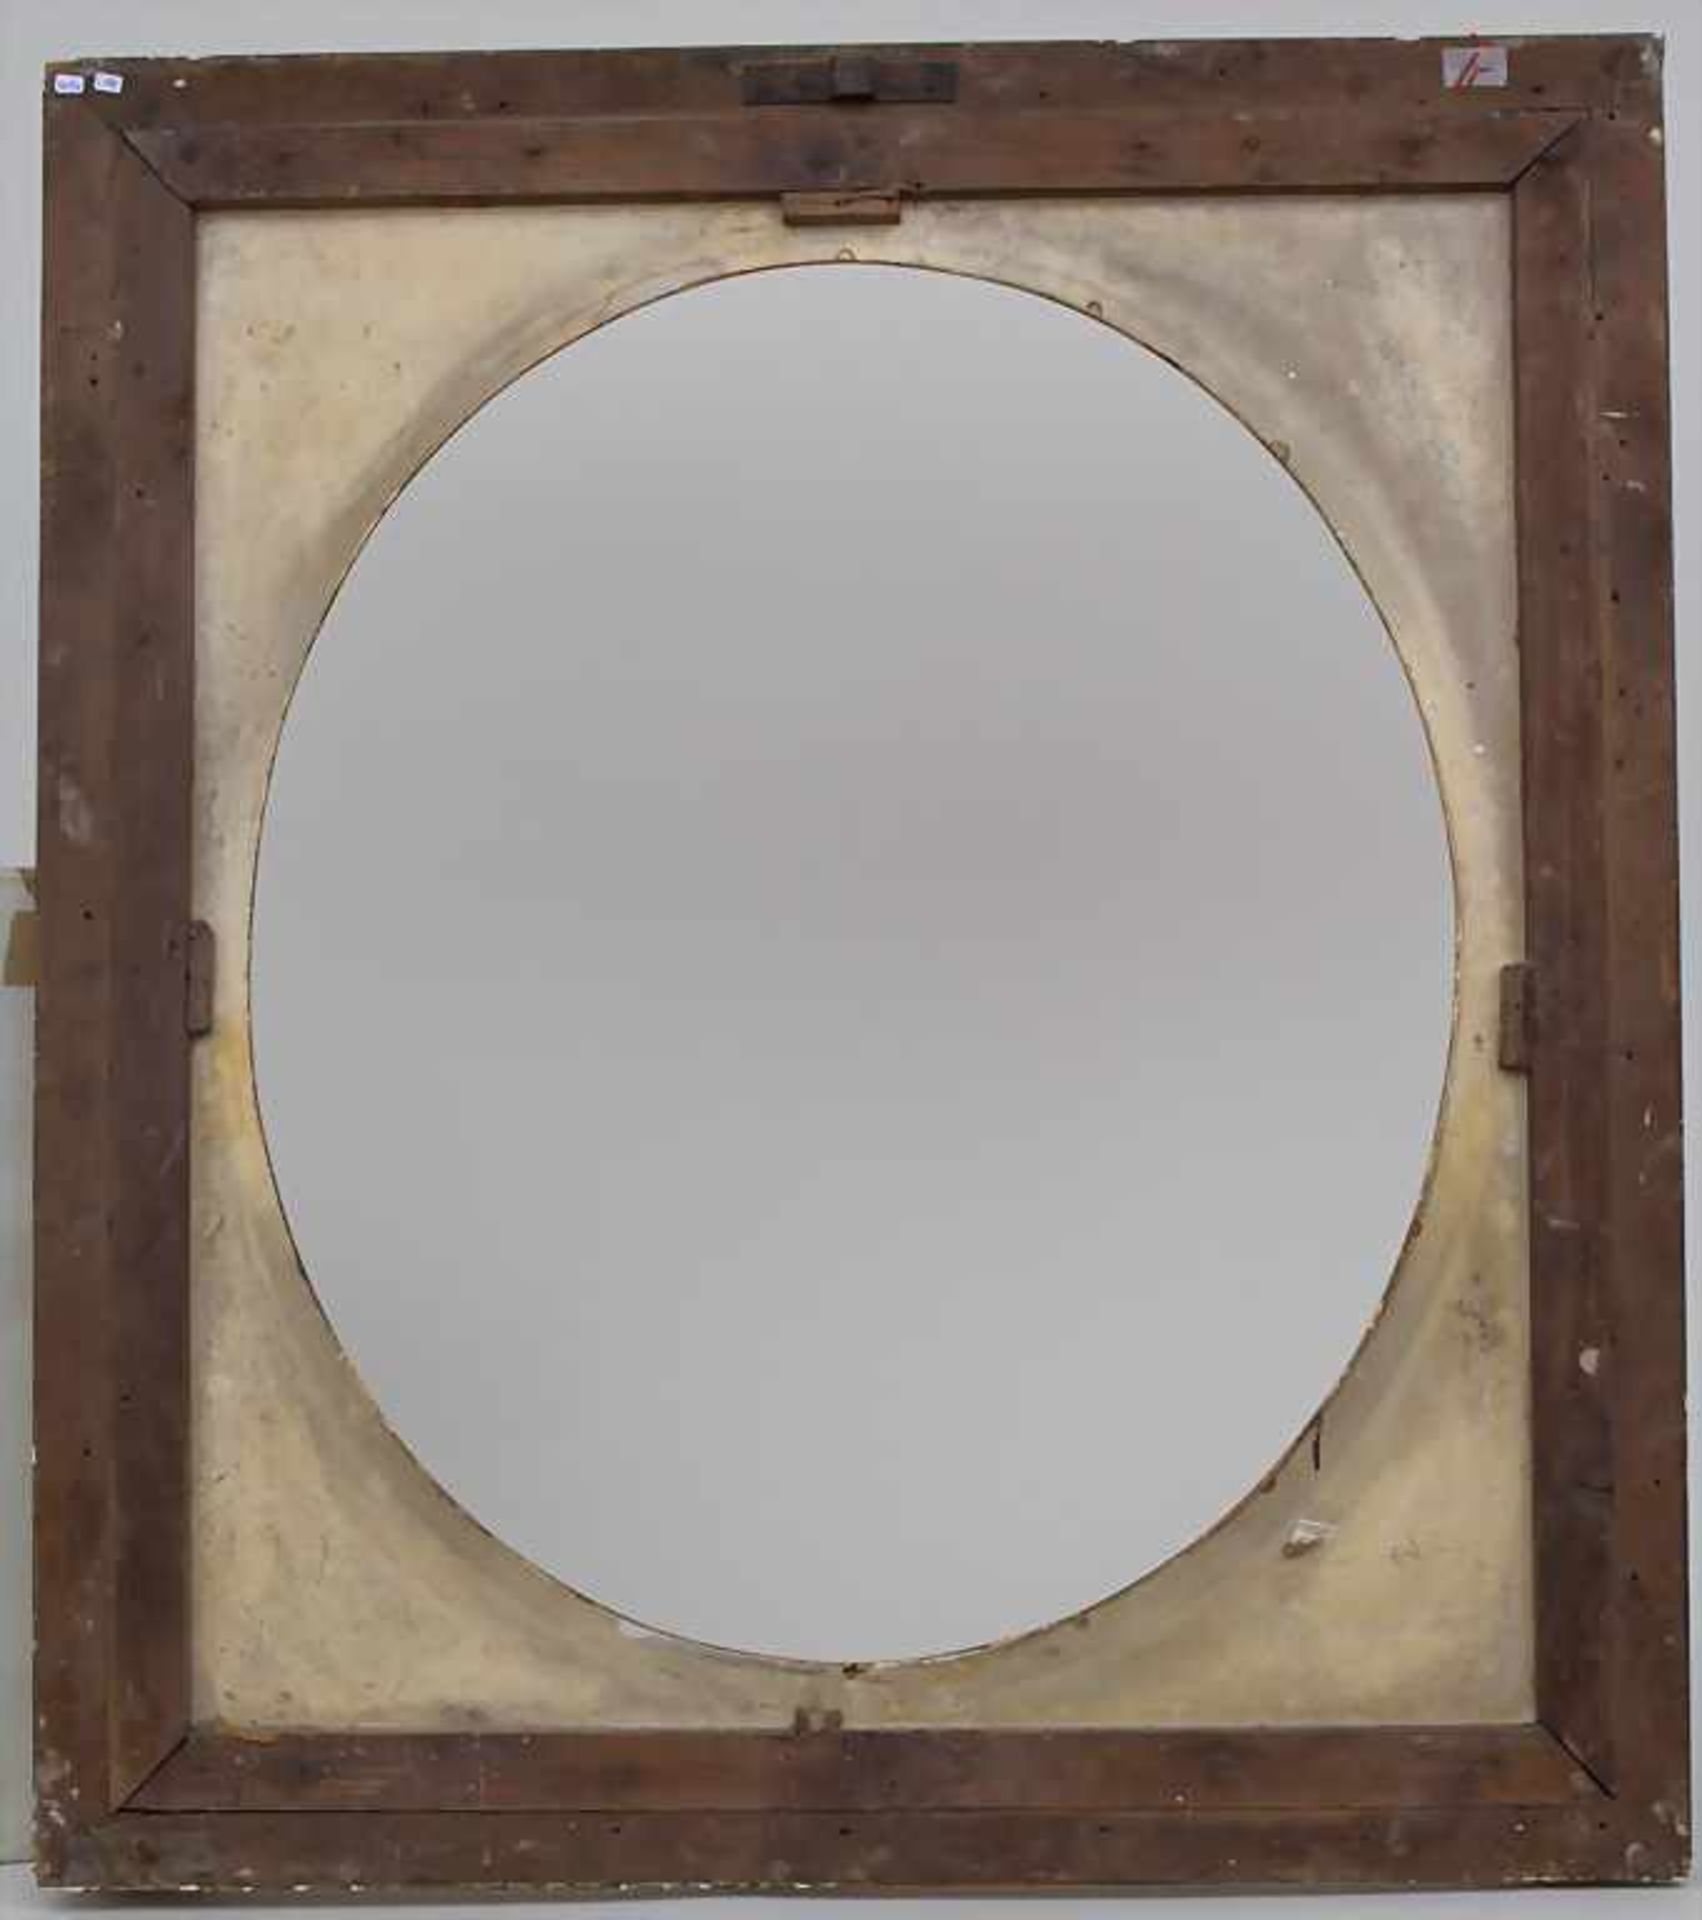 Klassizistischer Rahmen / A classicist frame, Anfang 19. Jh.Material: Holz, stuckiert, vergoldet, - Bild 3 aus 3